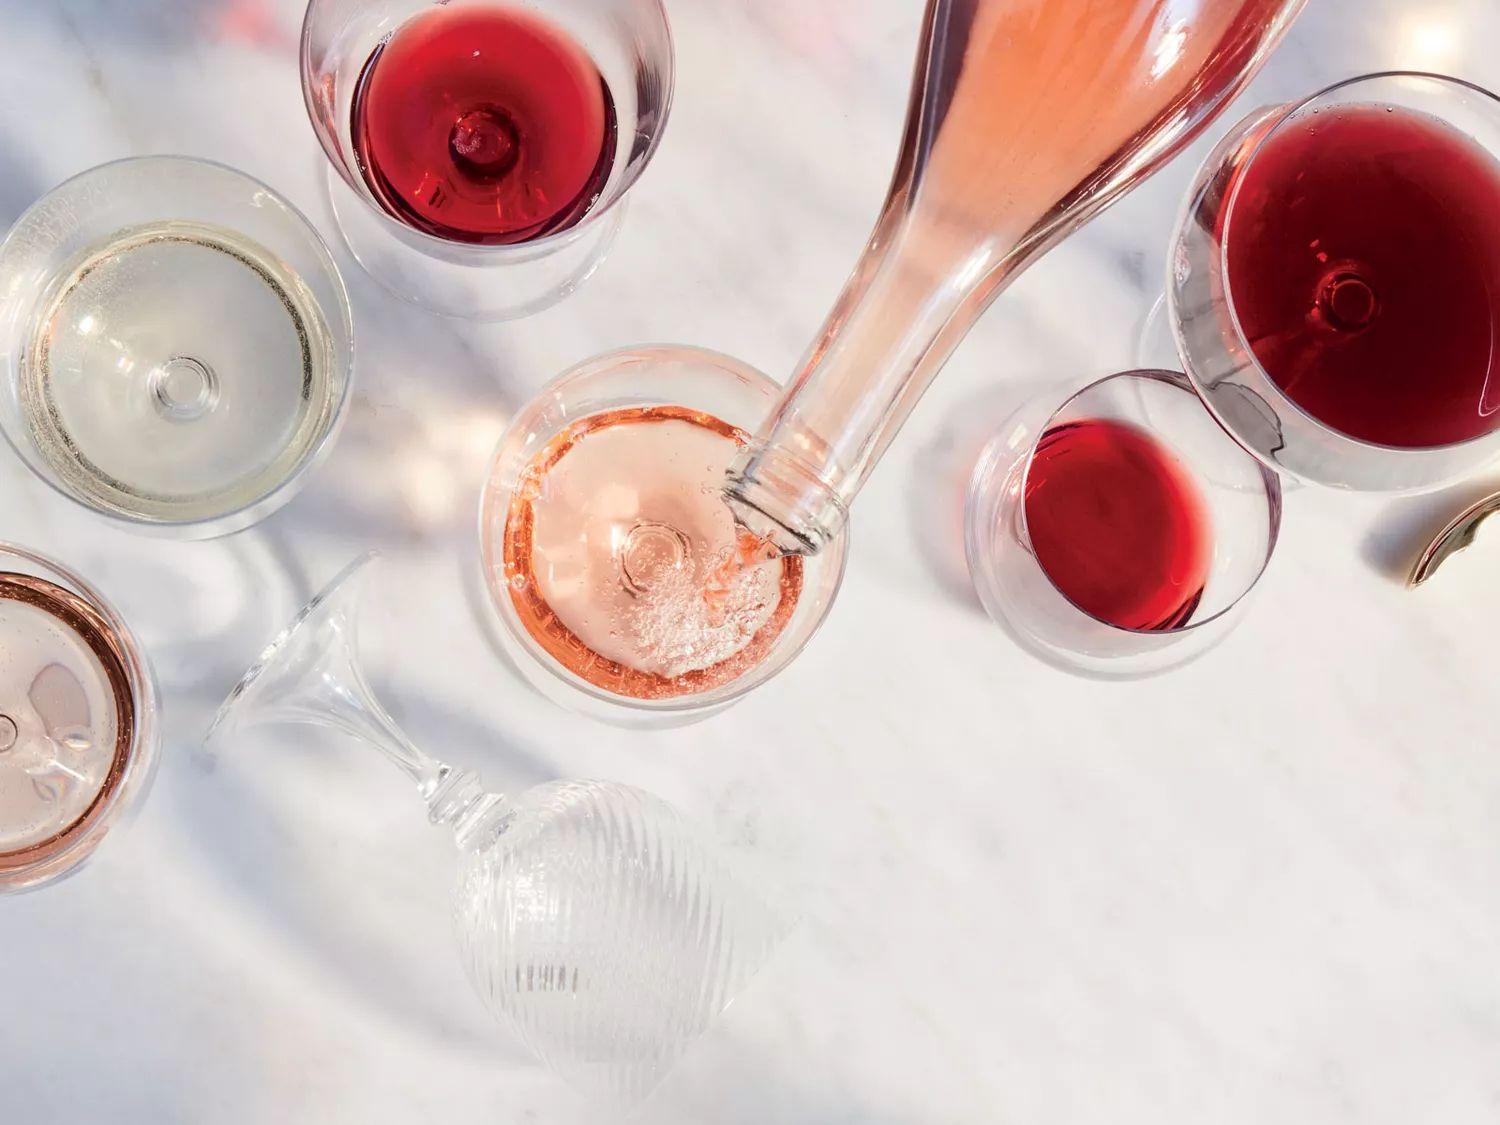 40 chai rượu vang làm chúng ta thay đổi cách uống